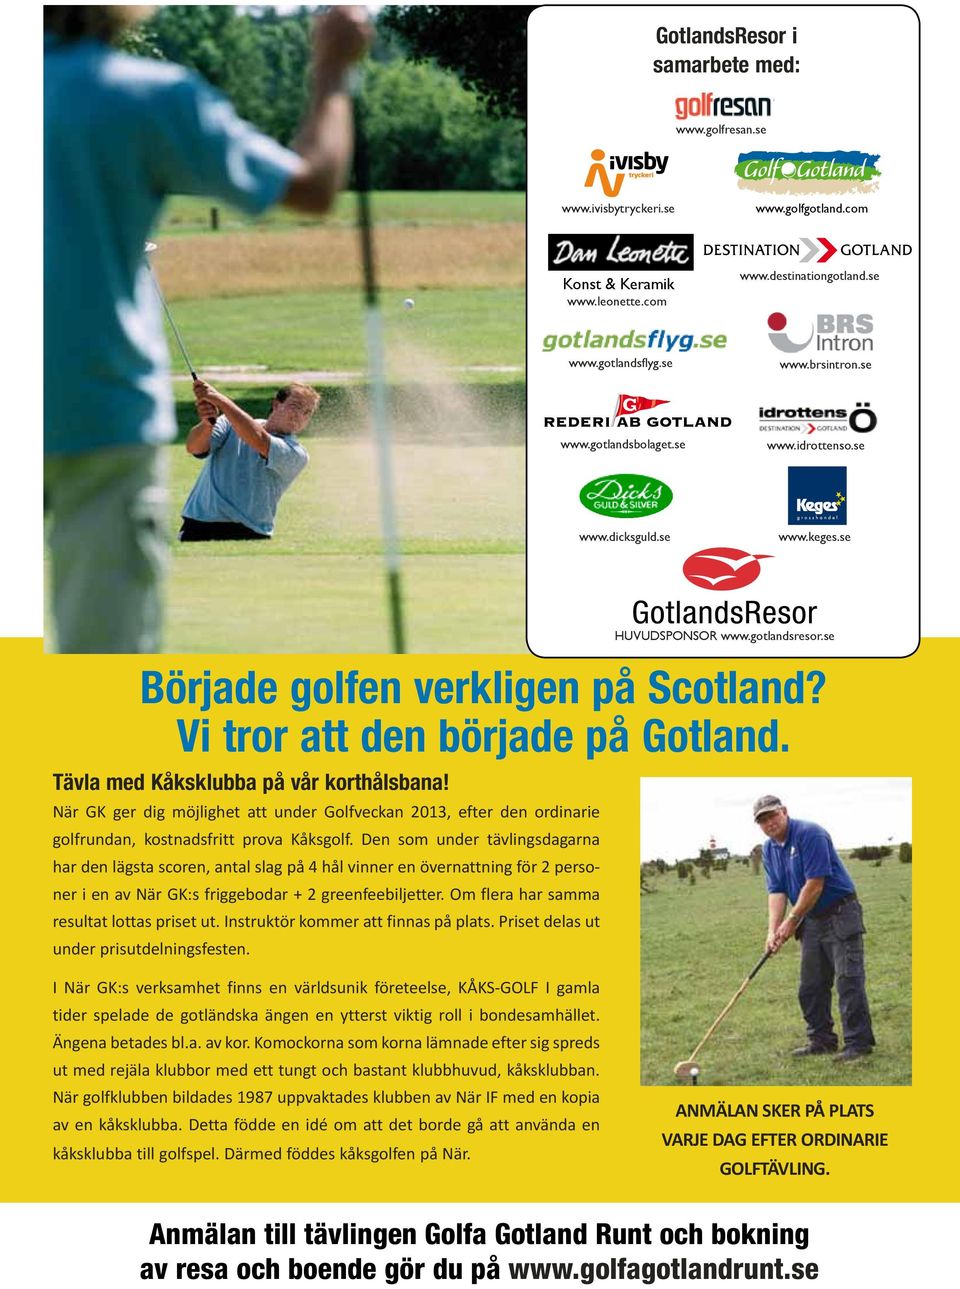 När GK ger dig möjlighet att under Golfveckan 2013, efter den ordinarie golfrundan, kostnadsfritt prova Kåksgolf.